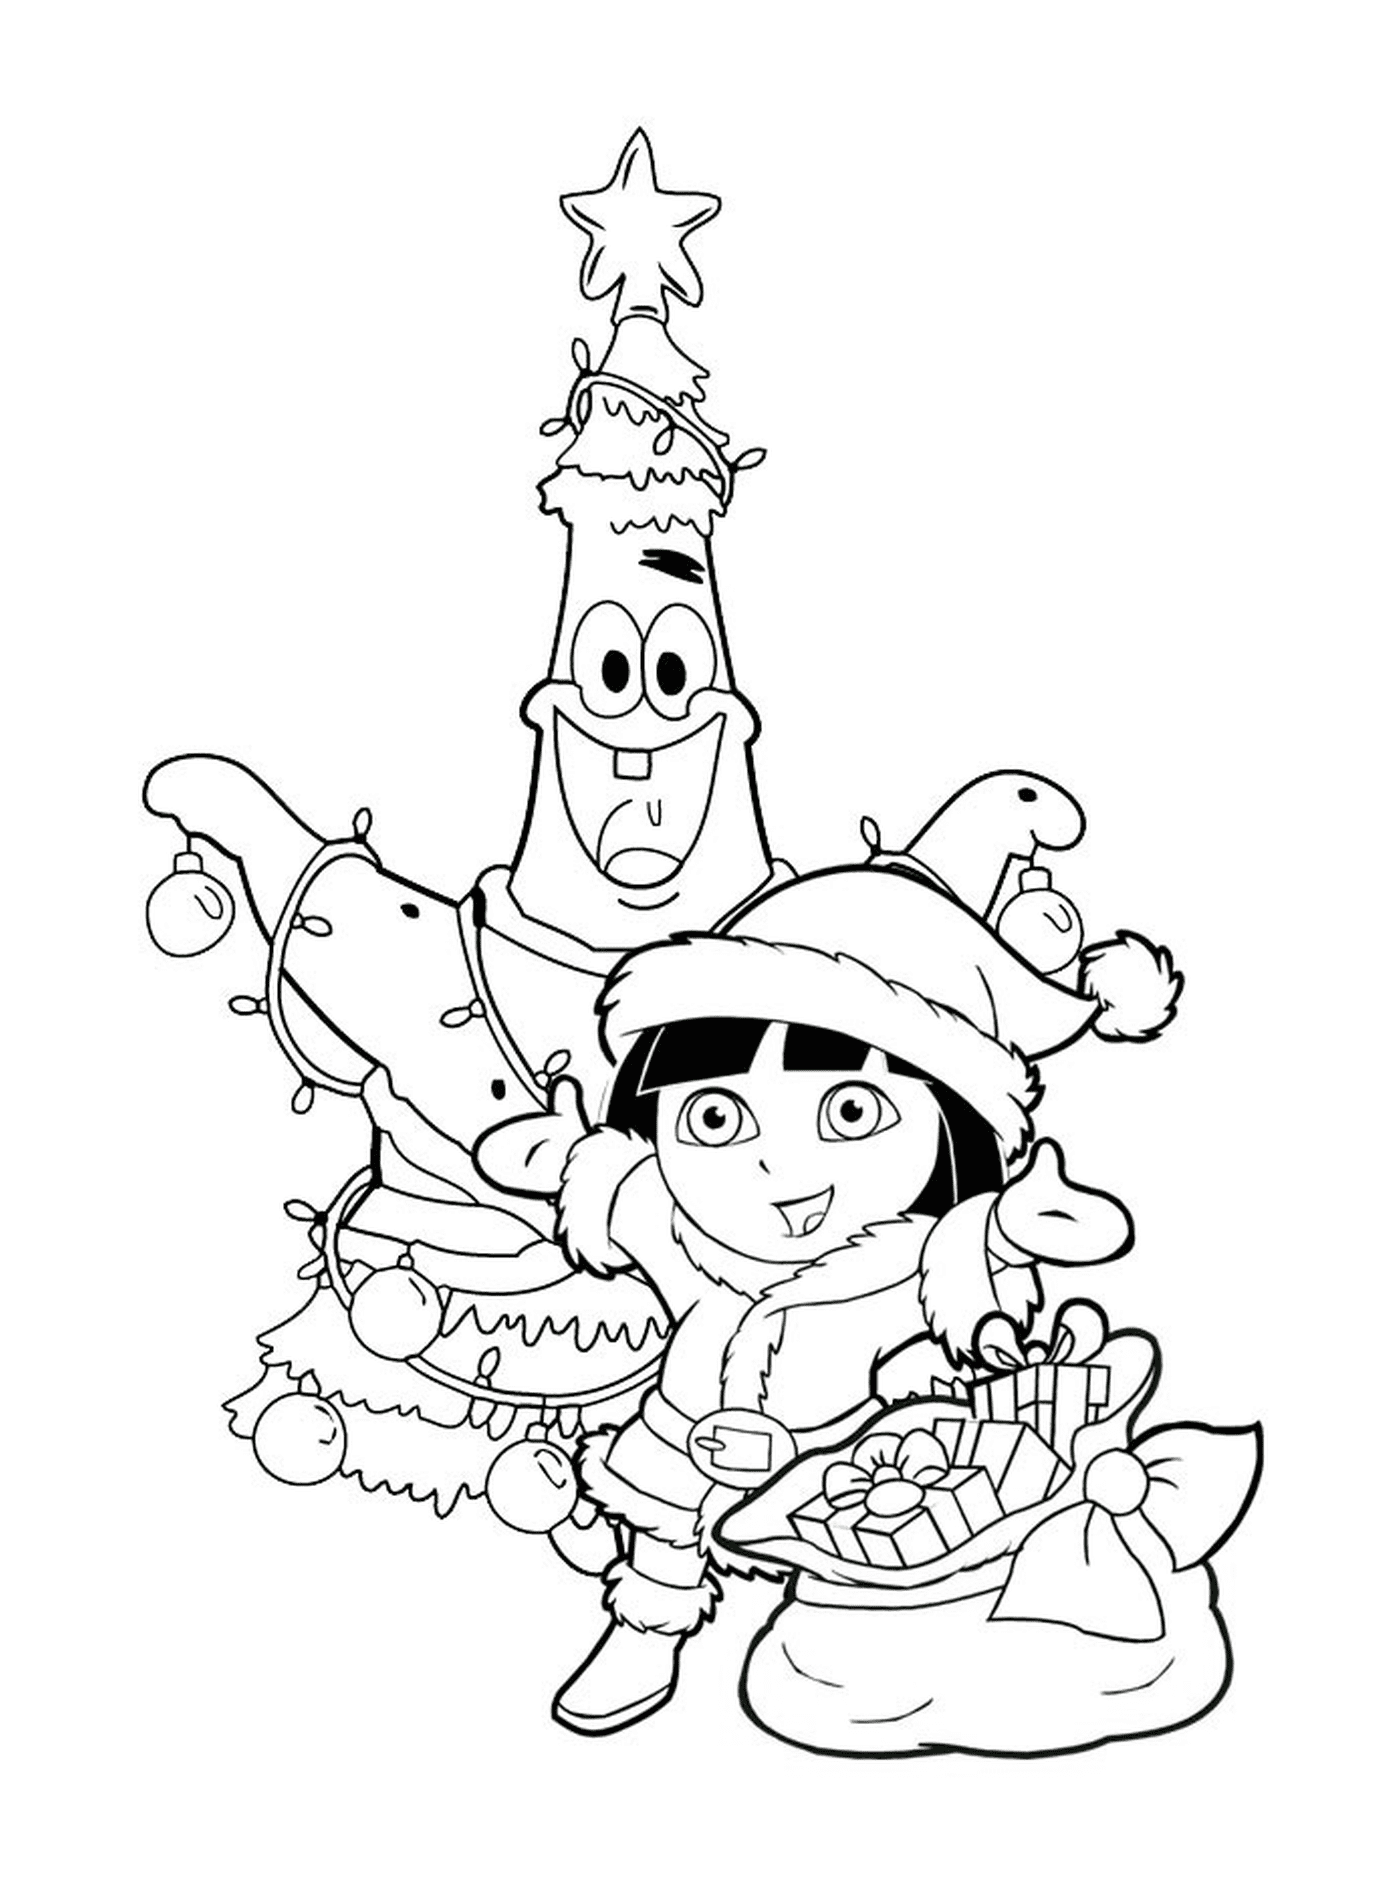  Dora feiert Weihnachten mit Patrick 